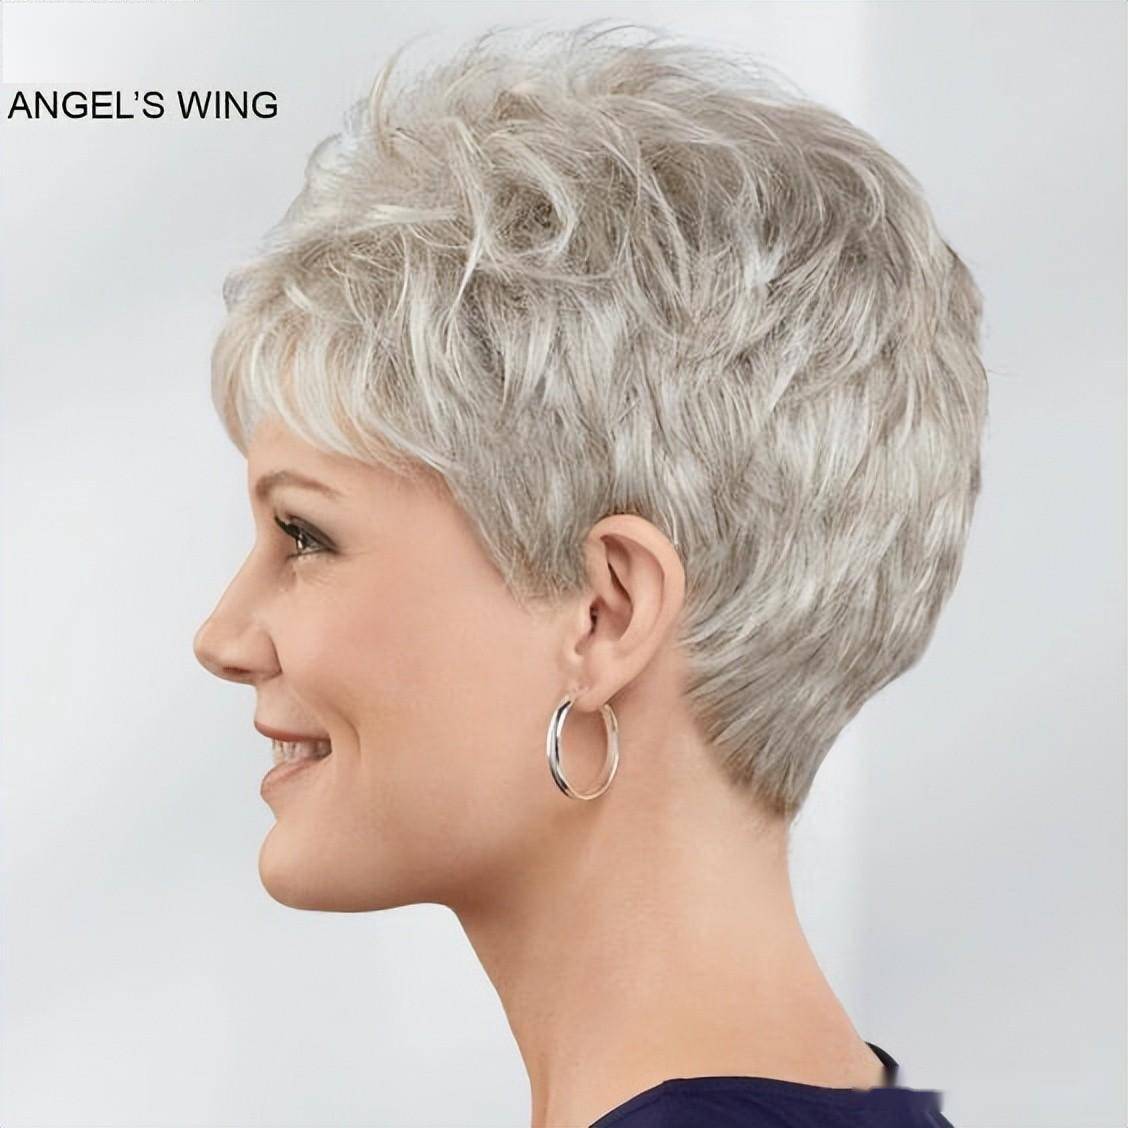 露耳纹理烫短发是一种富有层次感和动感的发型,它通过烫发技术和纹理